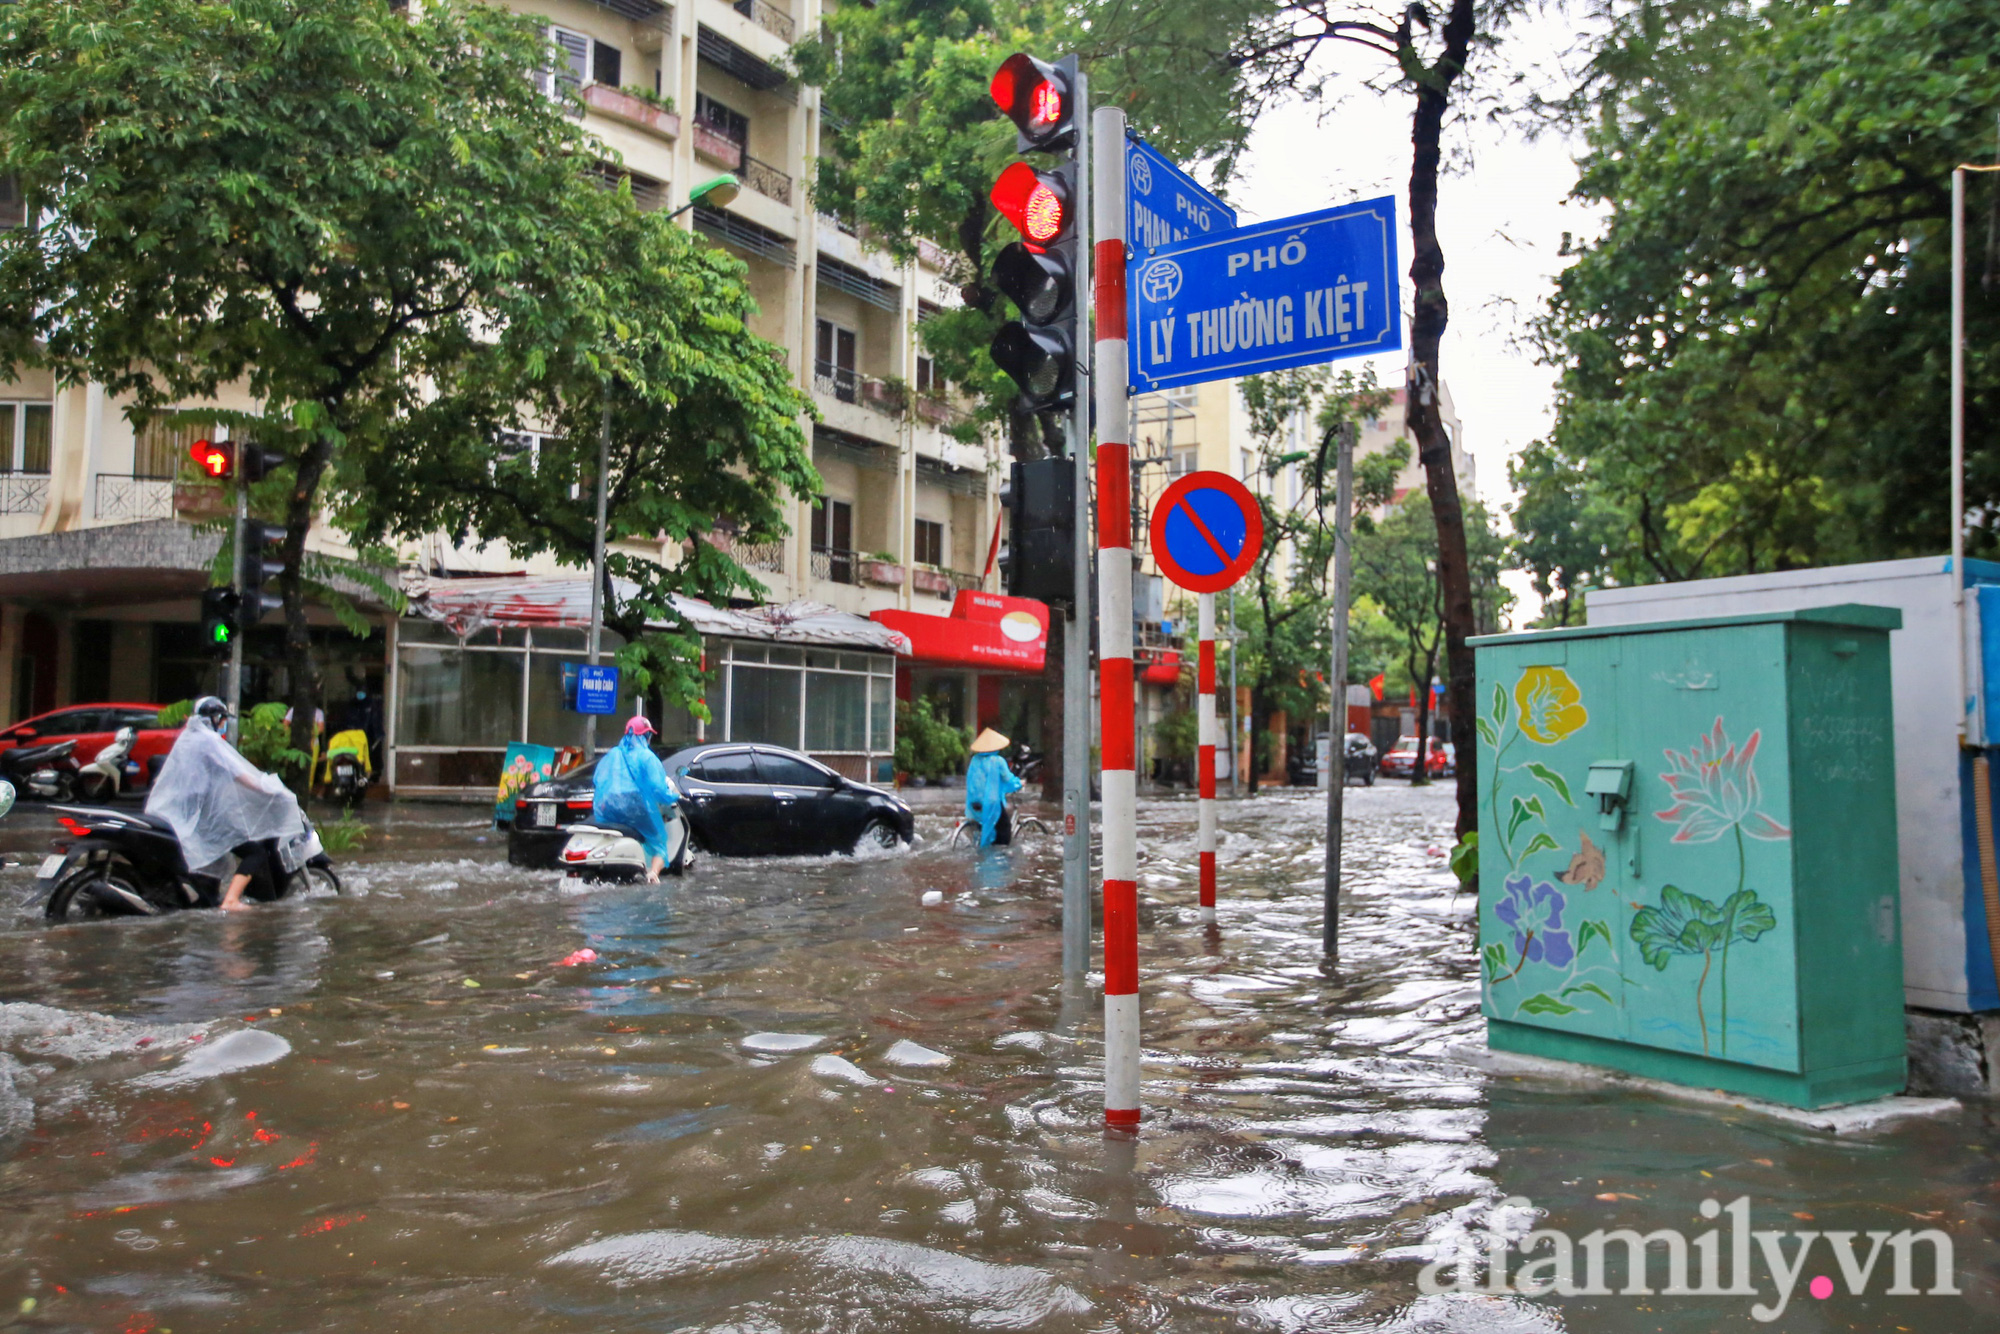 Công nhân môi trường vất vả trong cơn mưa tầm tã ngày giãn cách ở Hà Nội - Ảnh 11.